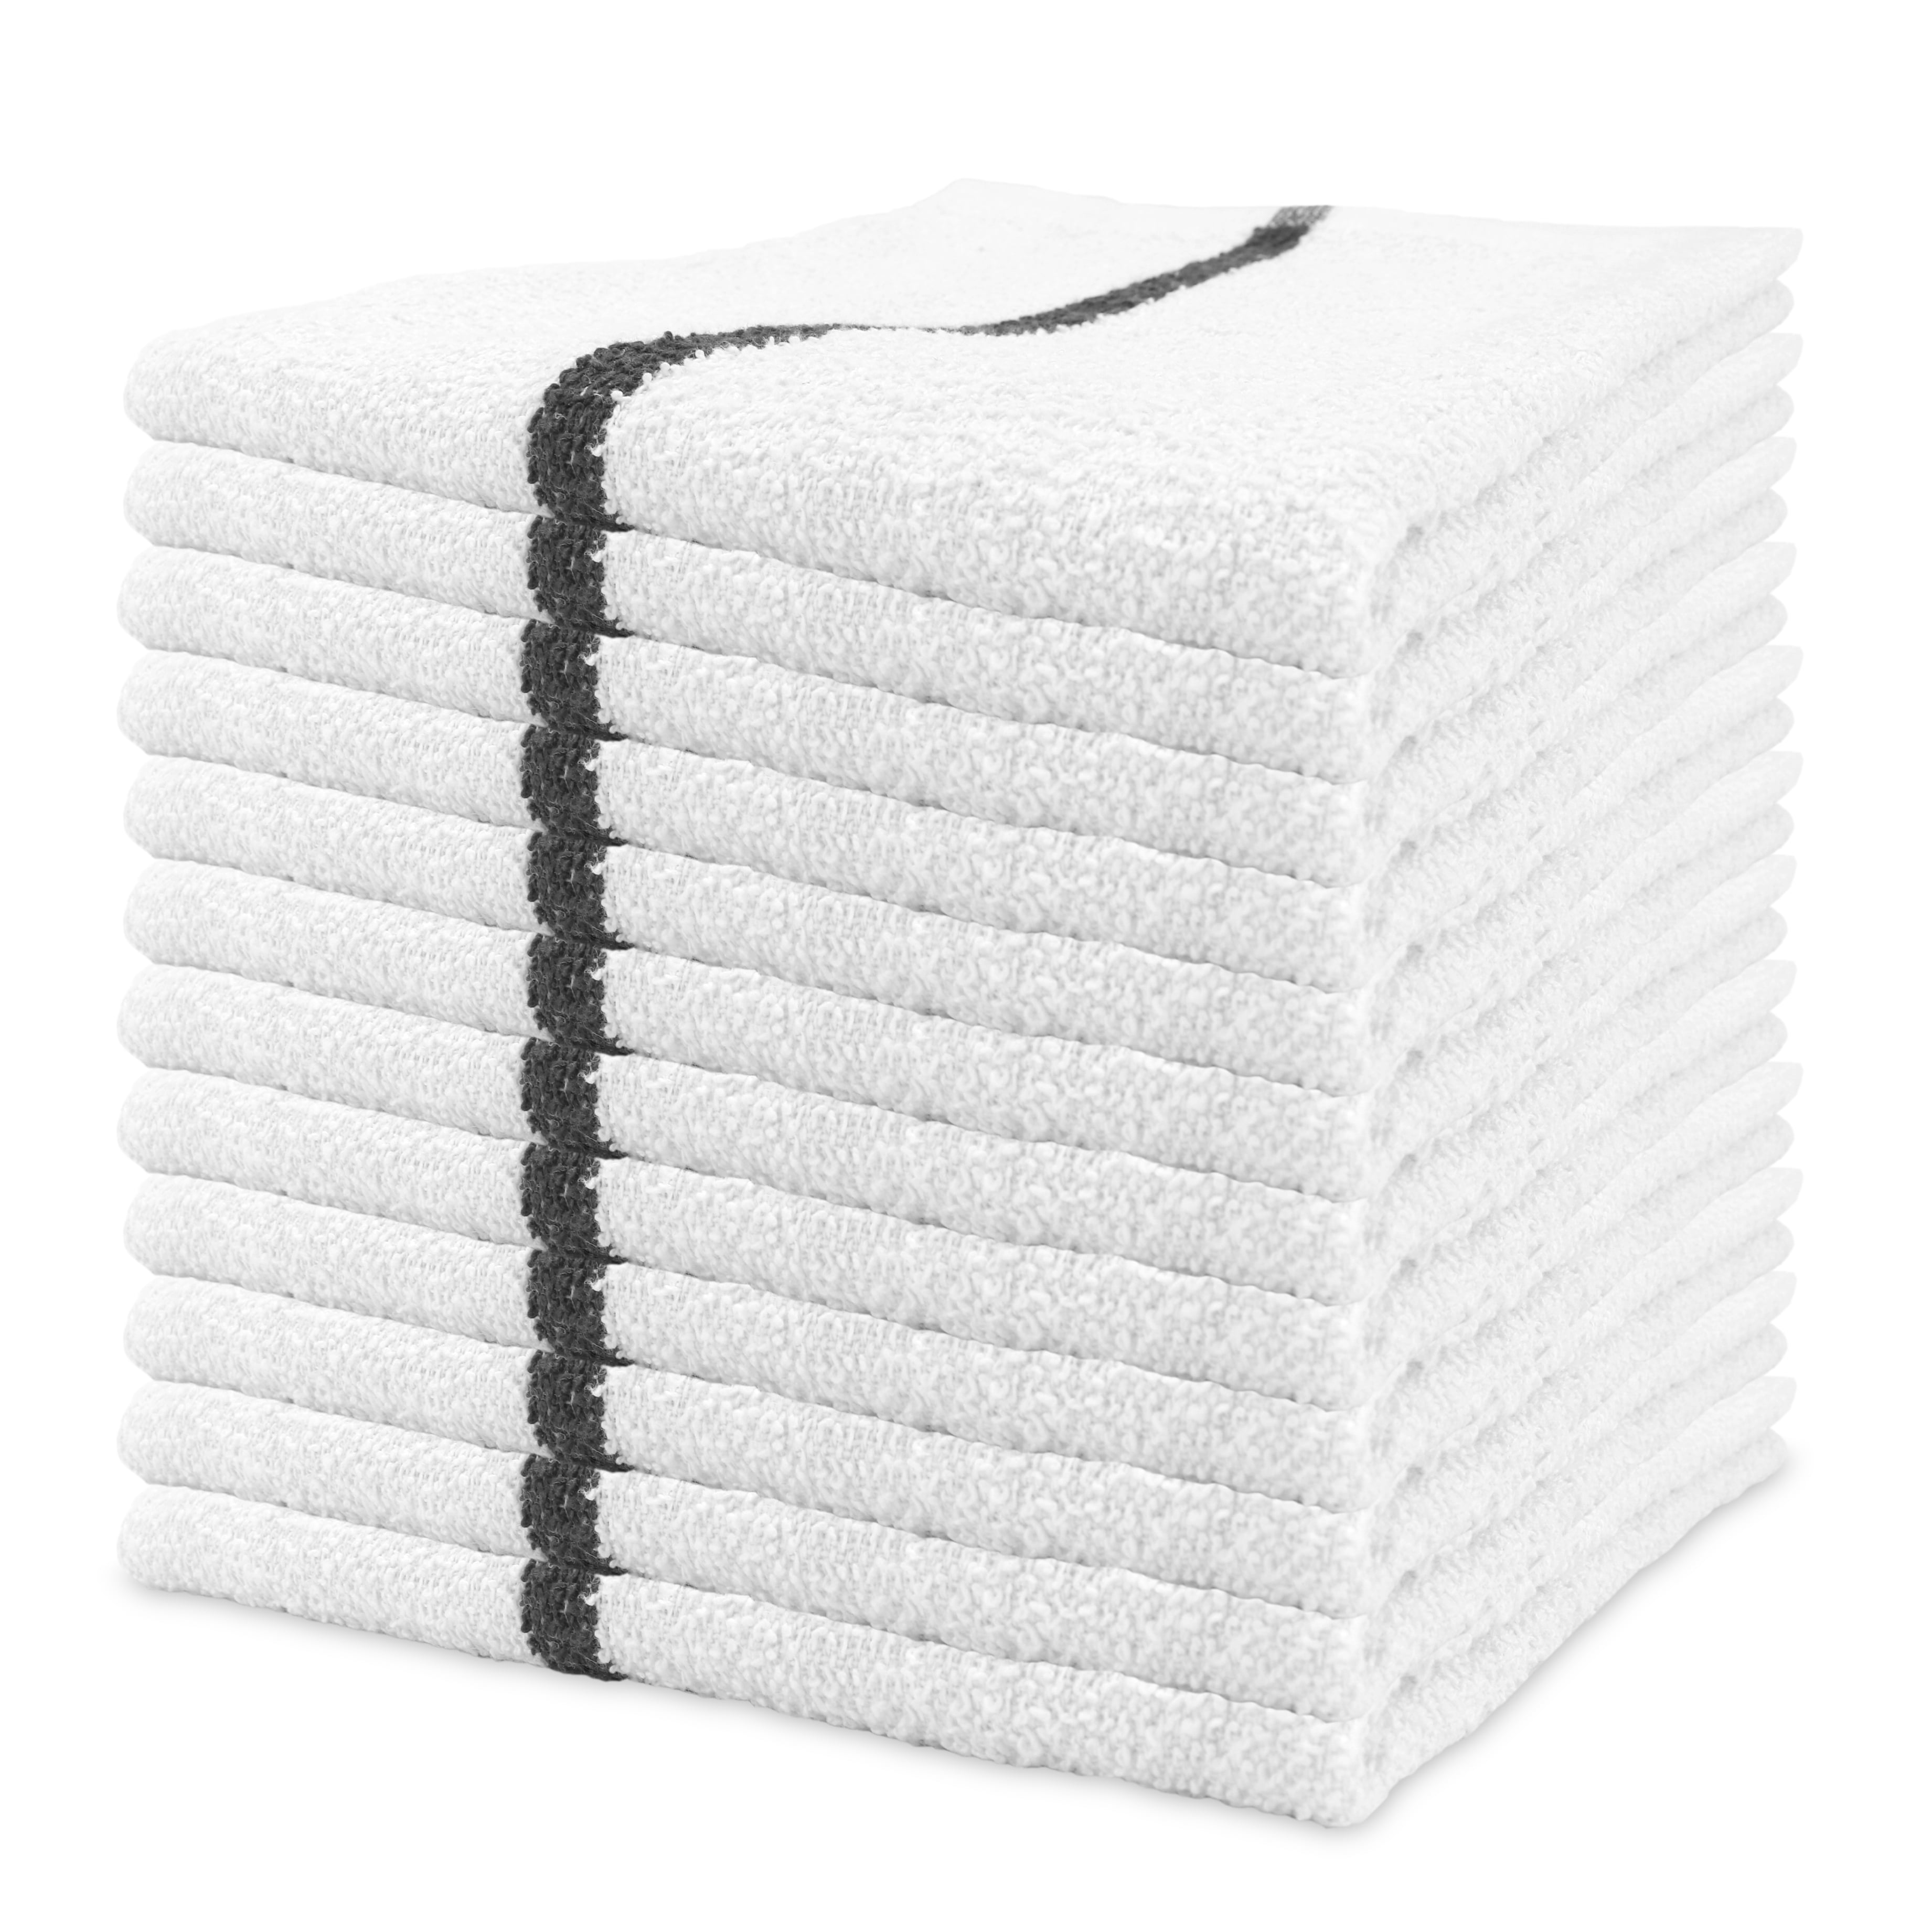 Wholesale Bath Towels 100% Cotton - In Bulk Cases